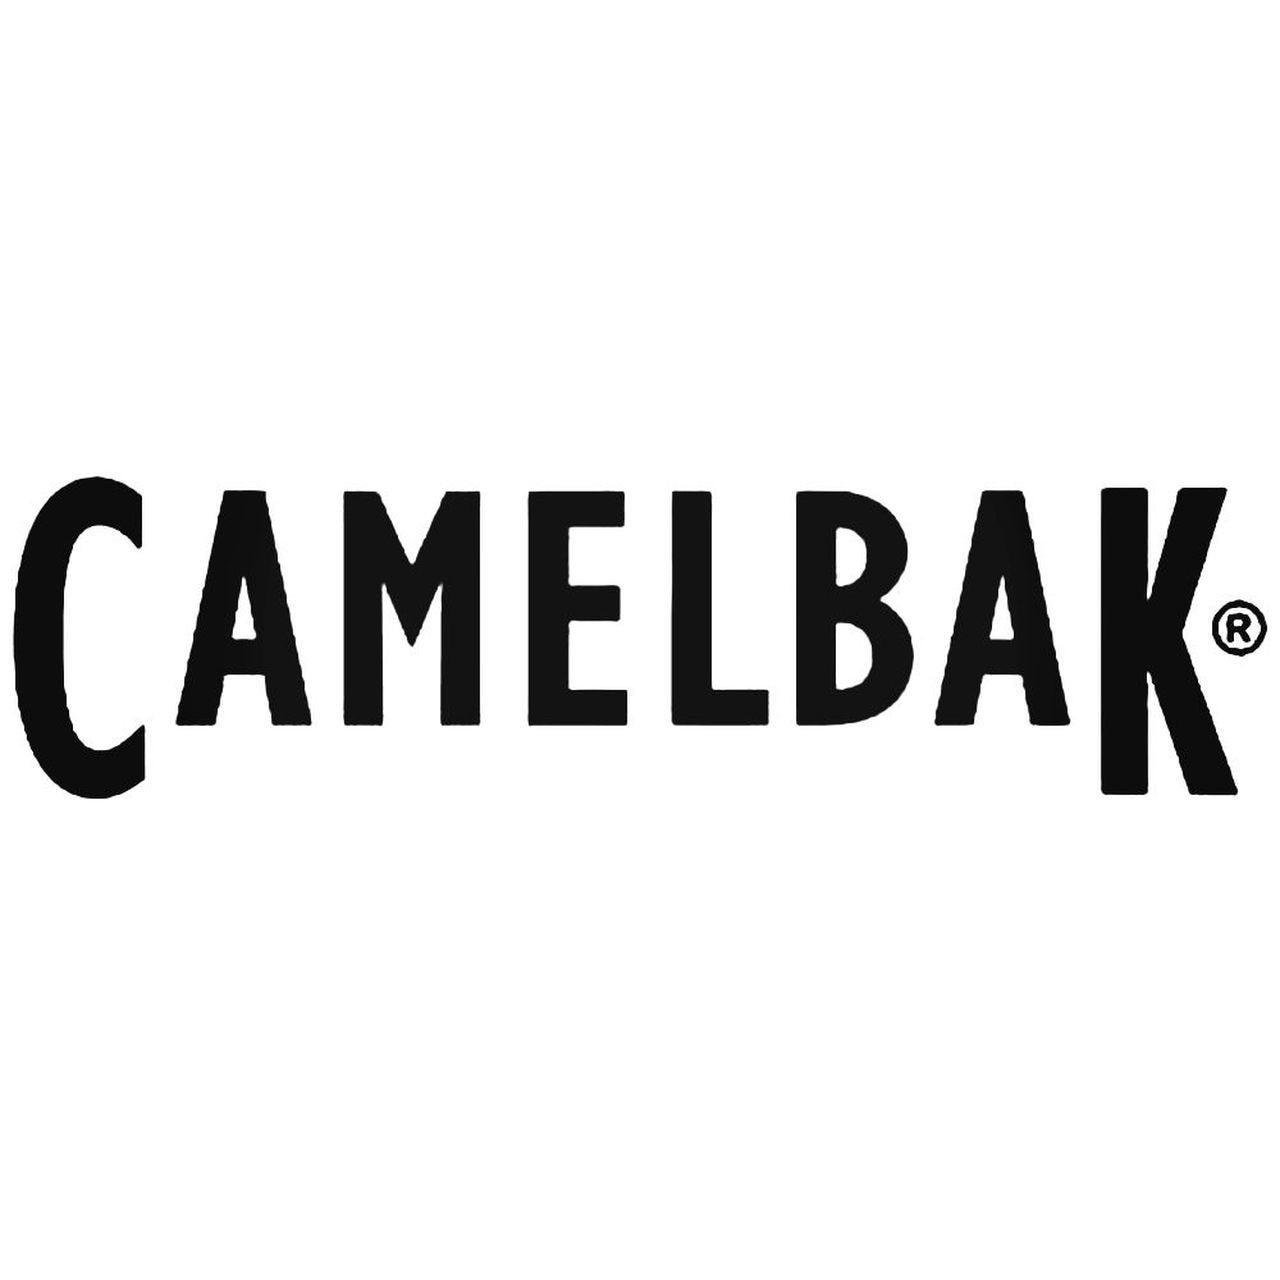 CamelBak Logo - Camelbak Decal Sticker